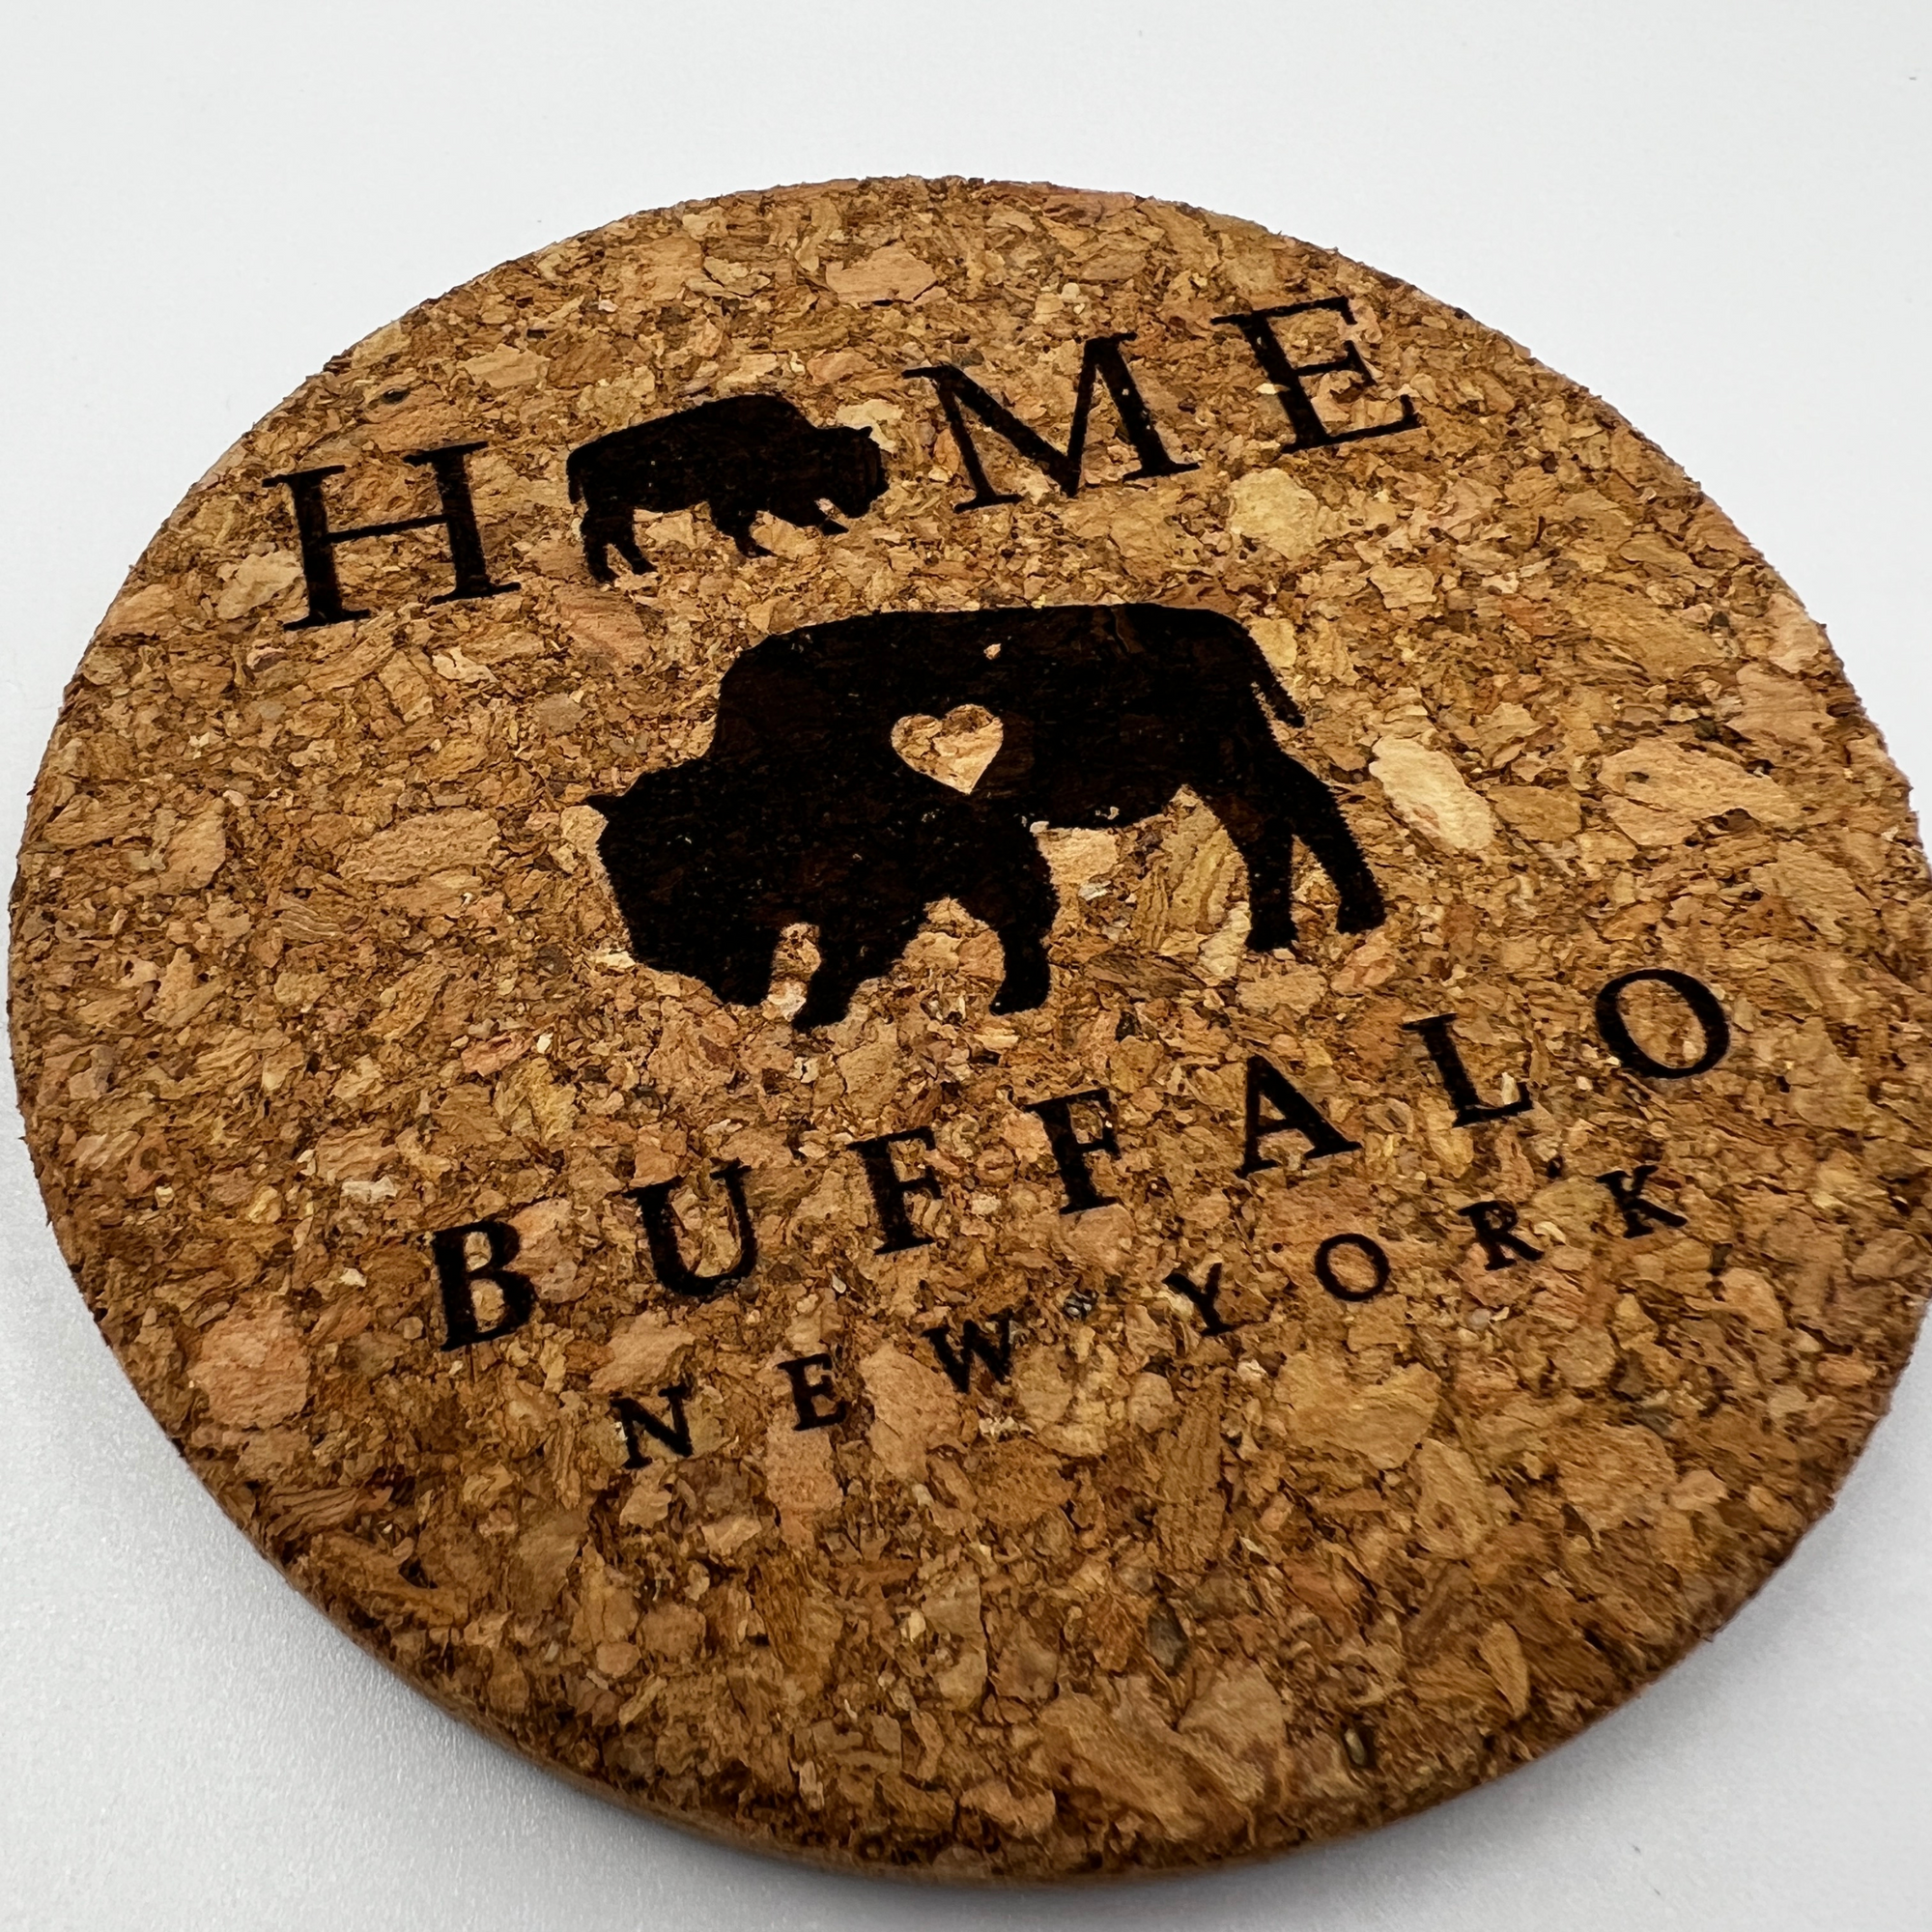 Buffalo Home Cork Coaster